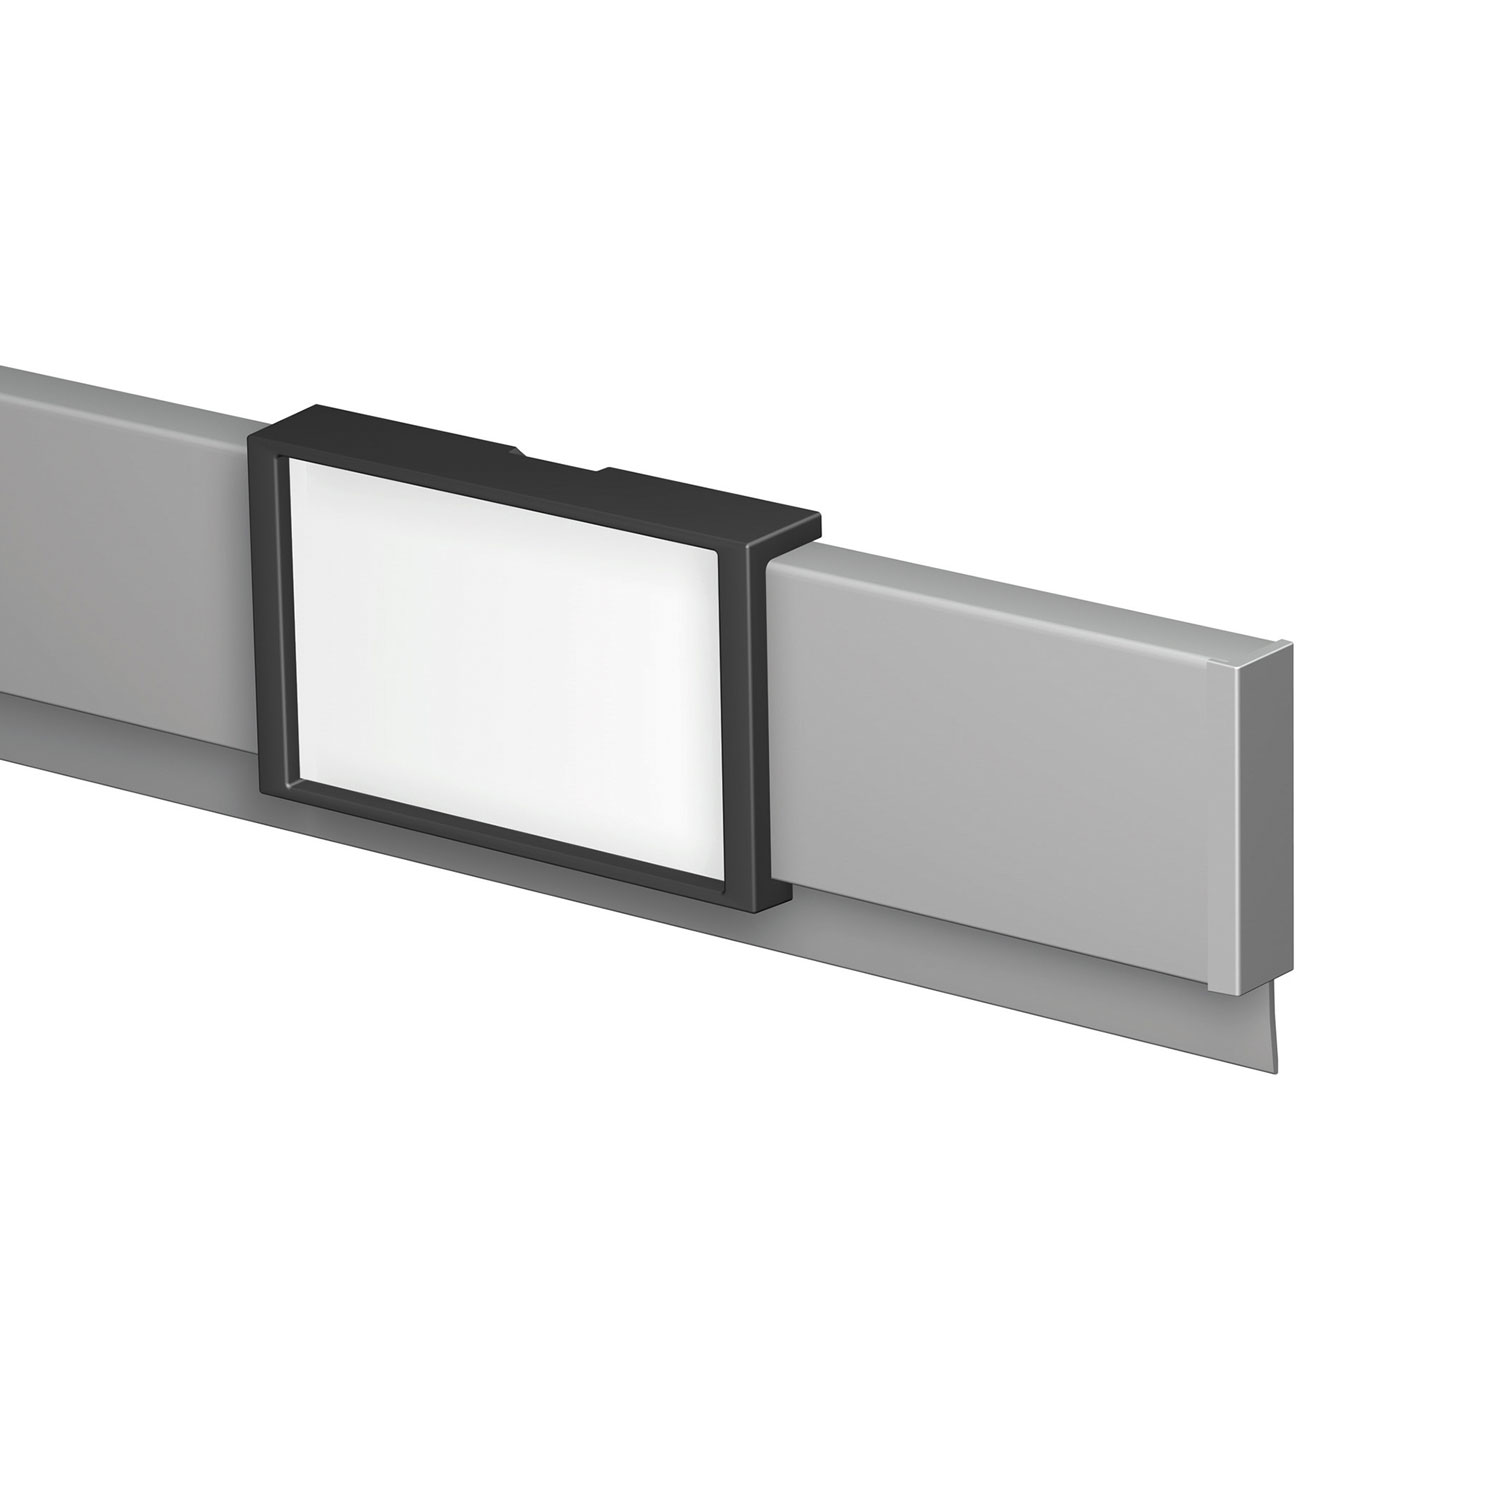 Aluminium-Platte mit unsichtbarem Aufhängesystem